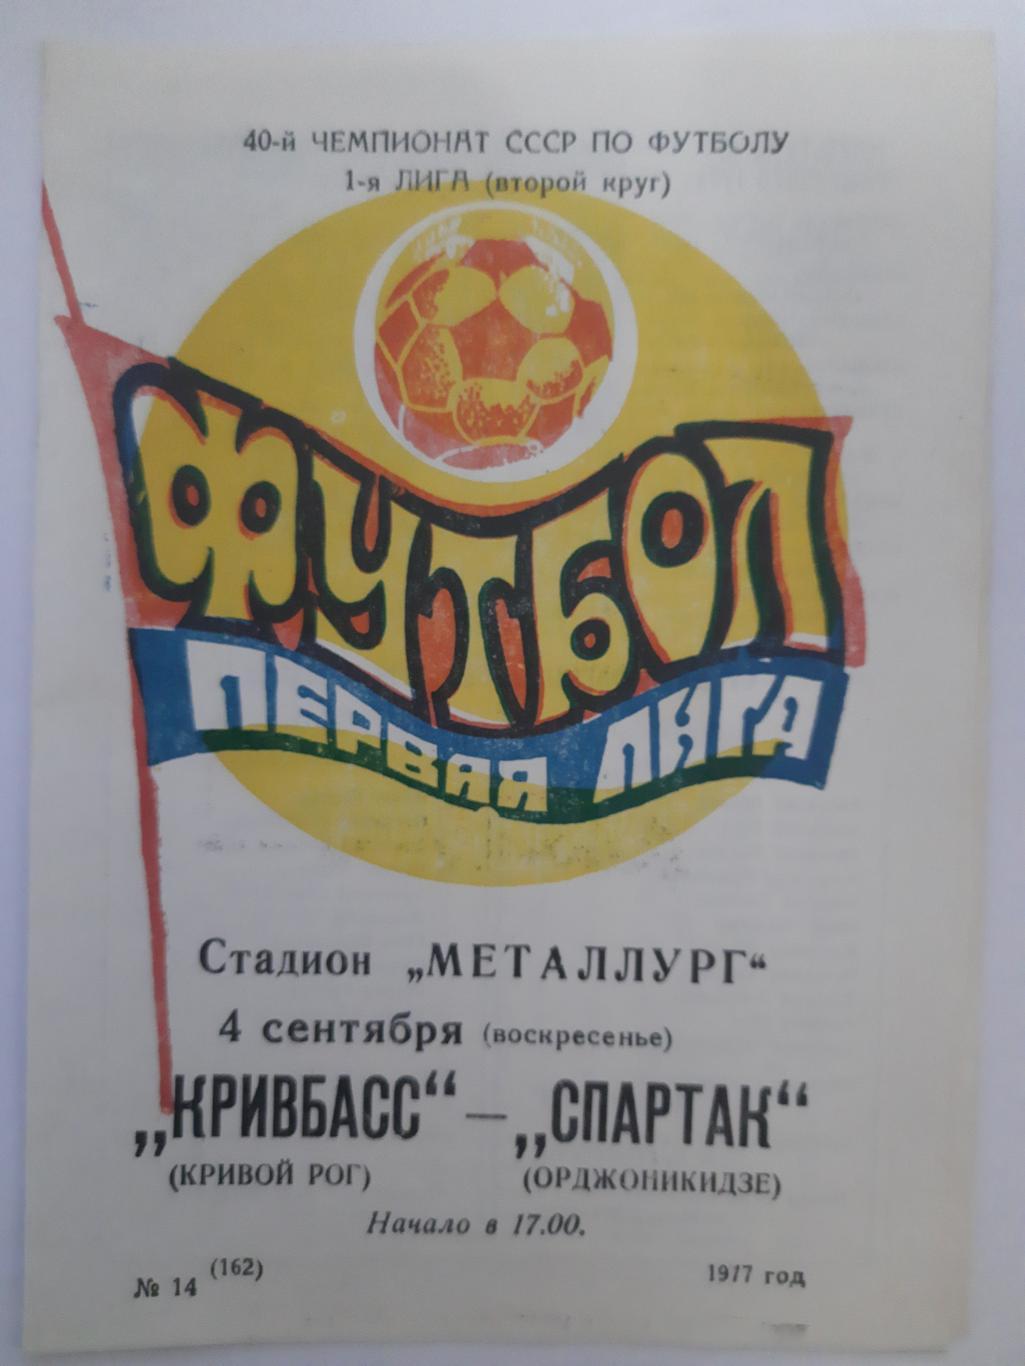 Кривбасс Кривой Рог - Спартак Орджиникидзе 4.09.1977